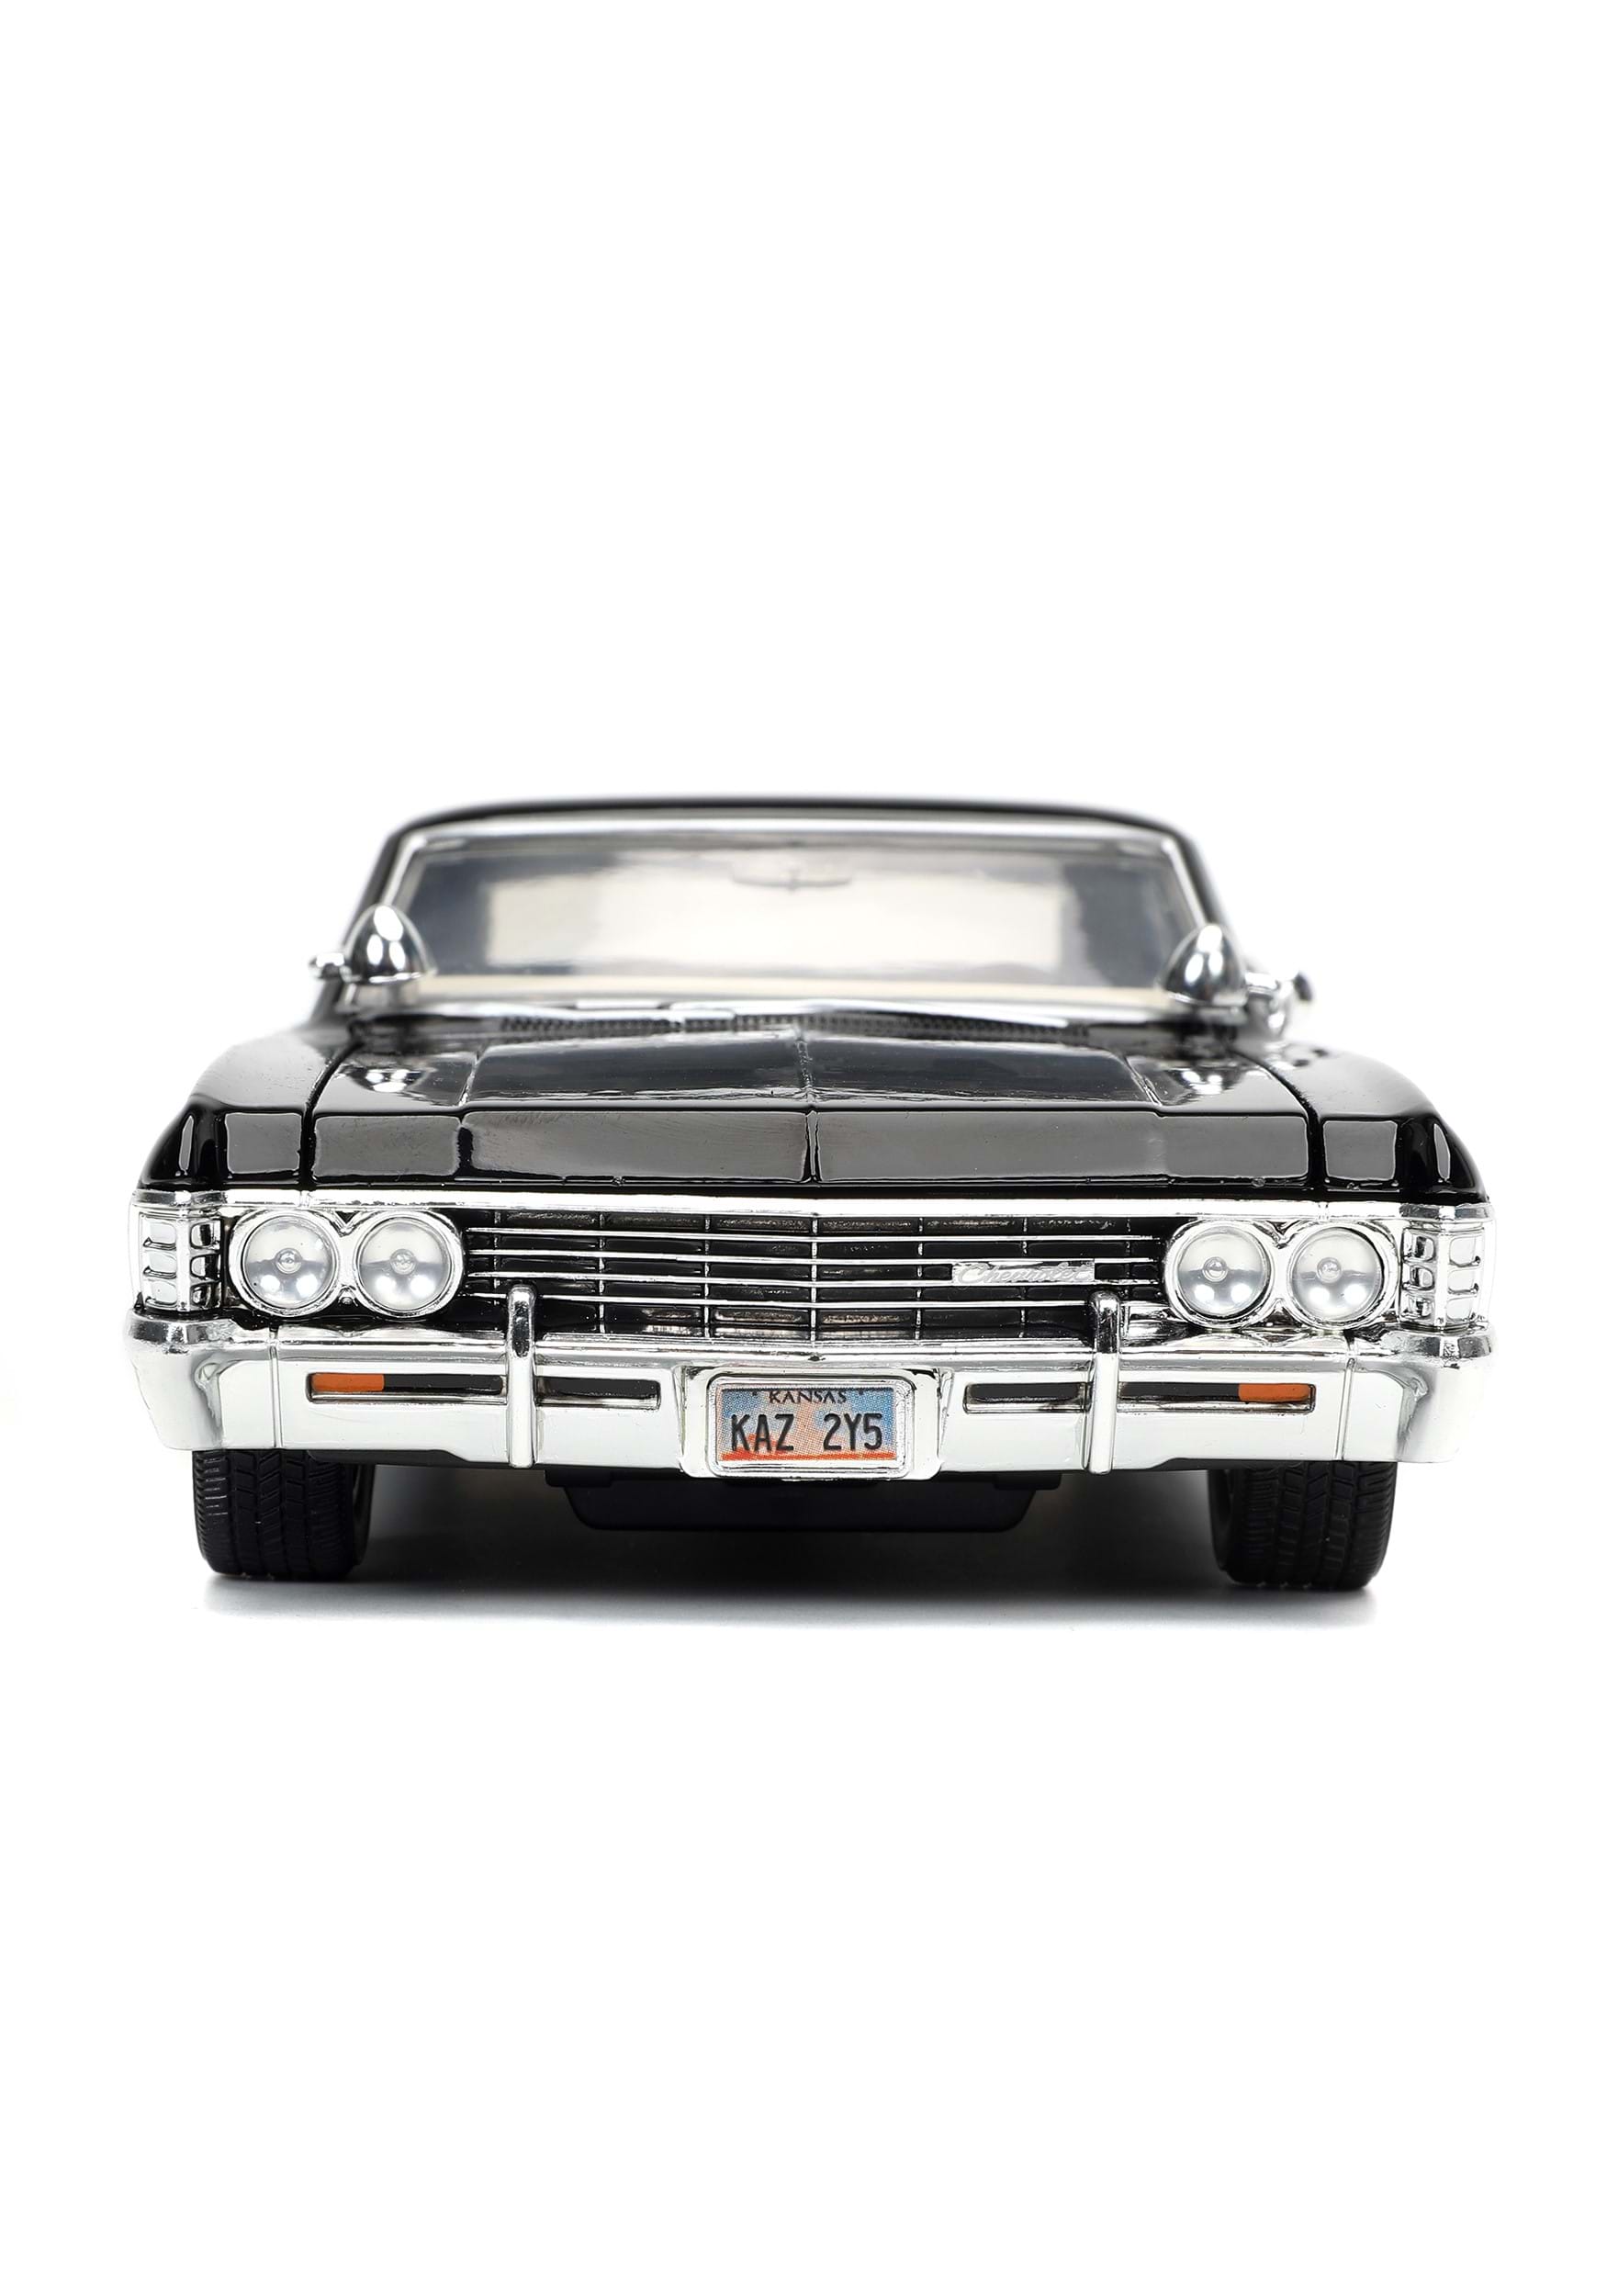 BABY 1967 CHEVY IMPALA SUPERNATURAL CAR - Chevy Impala - Pin